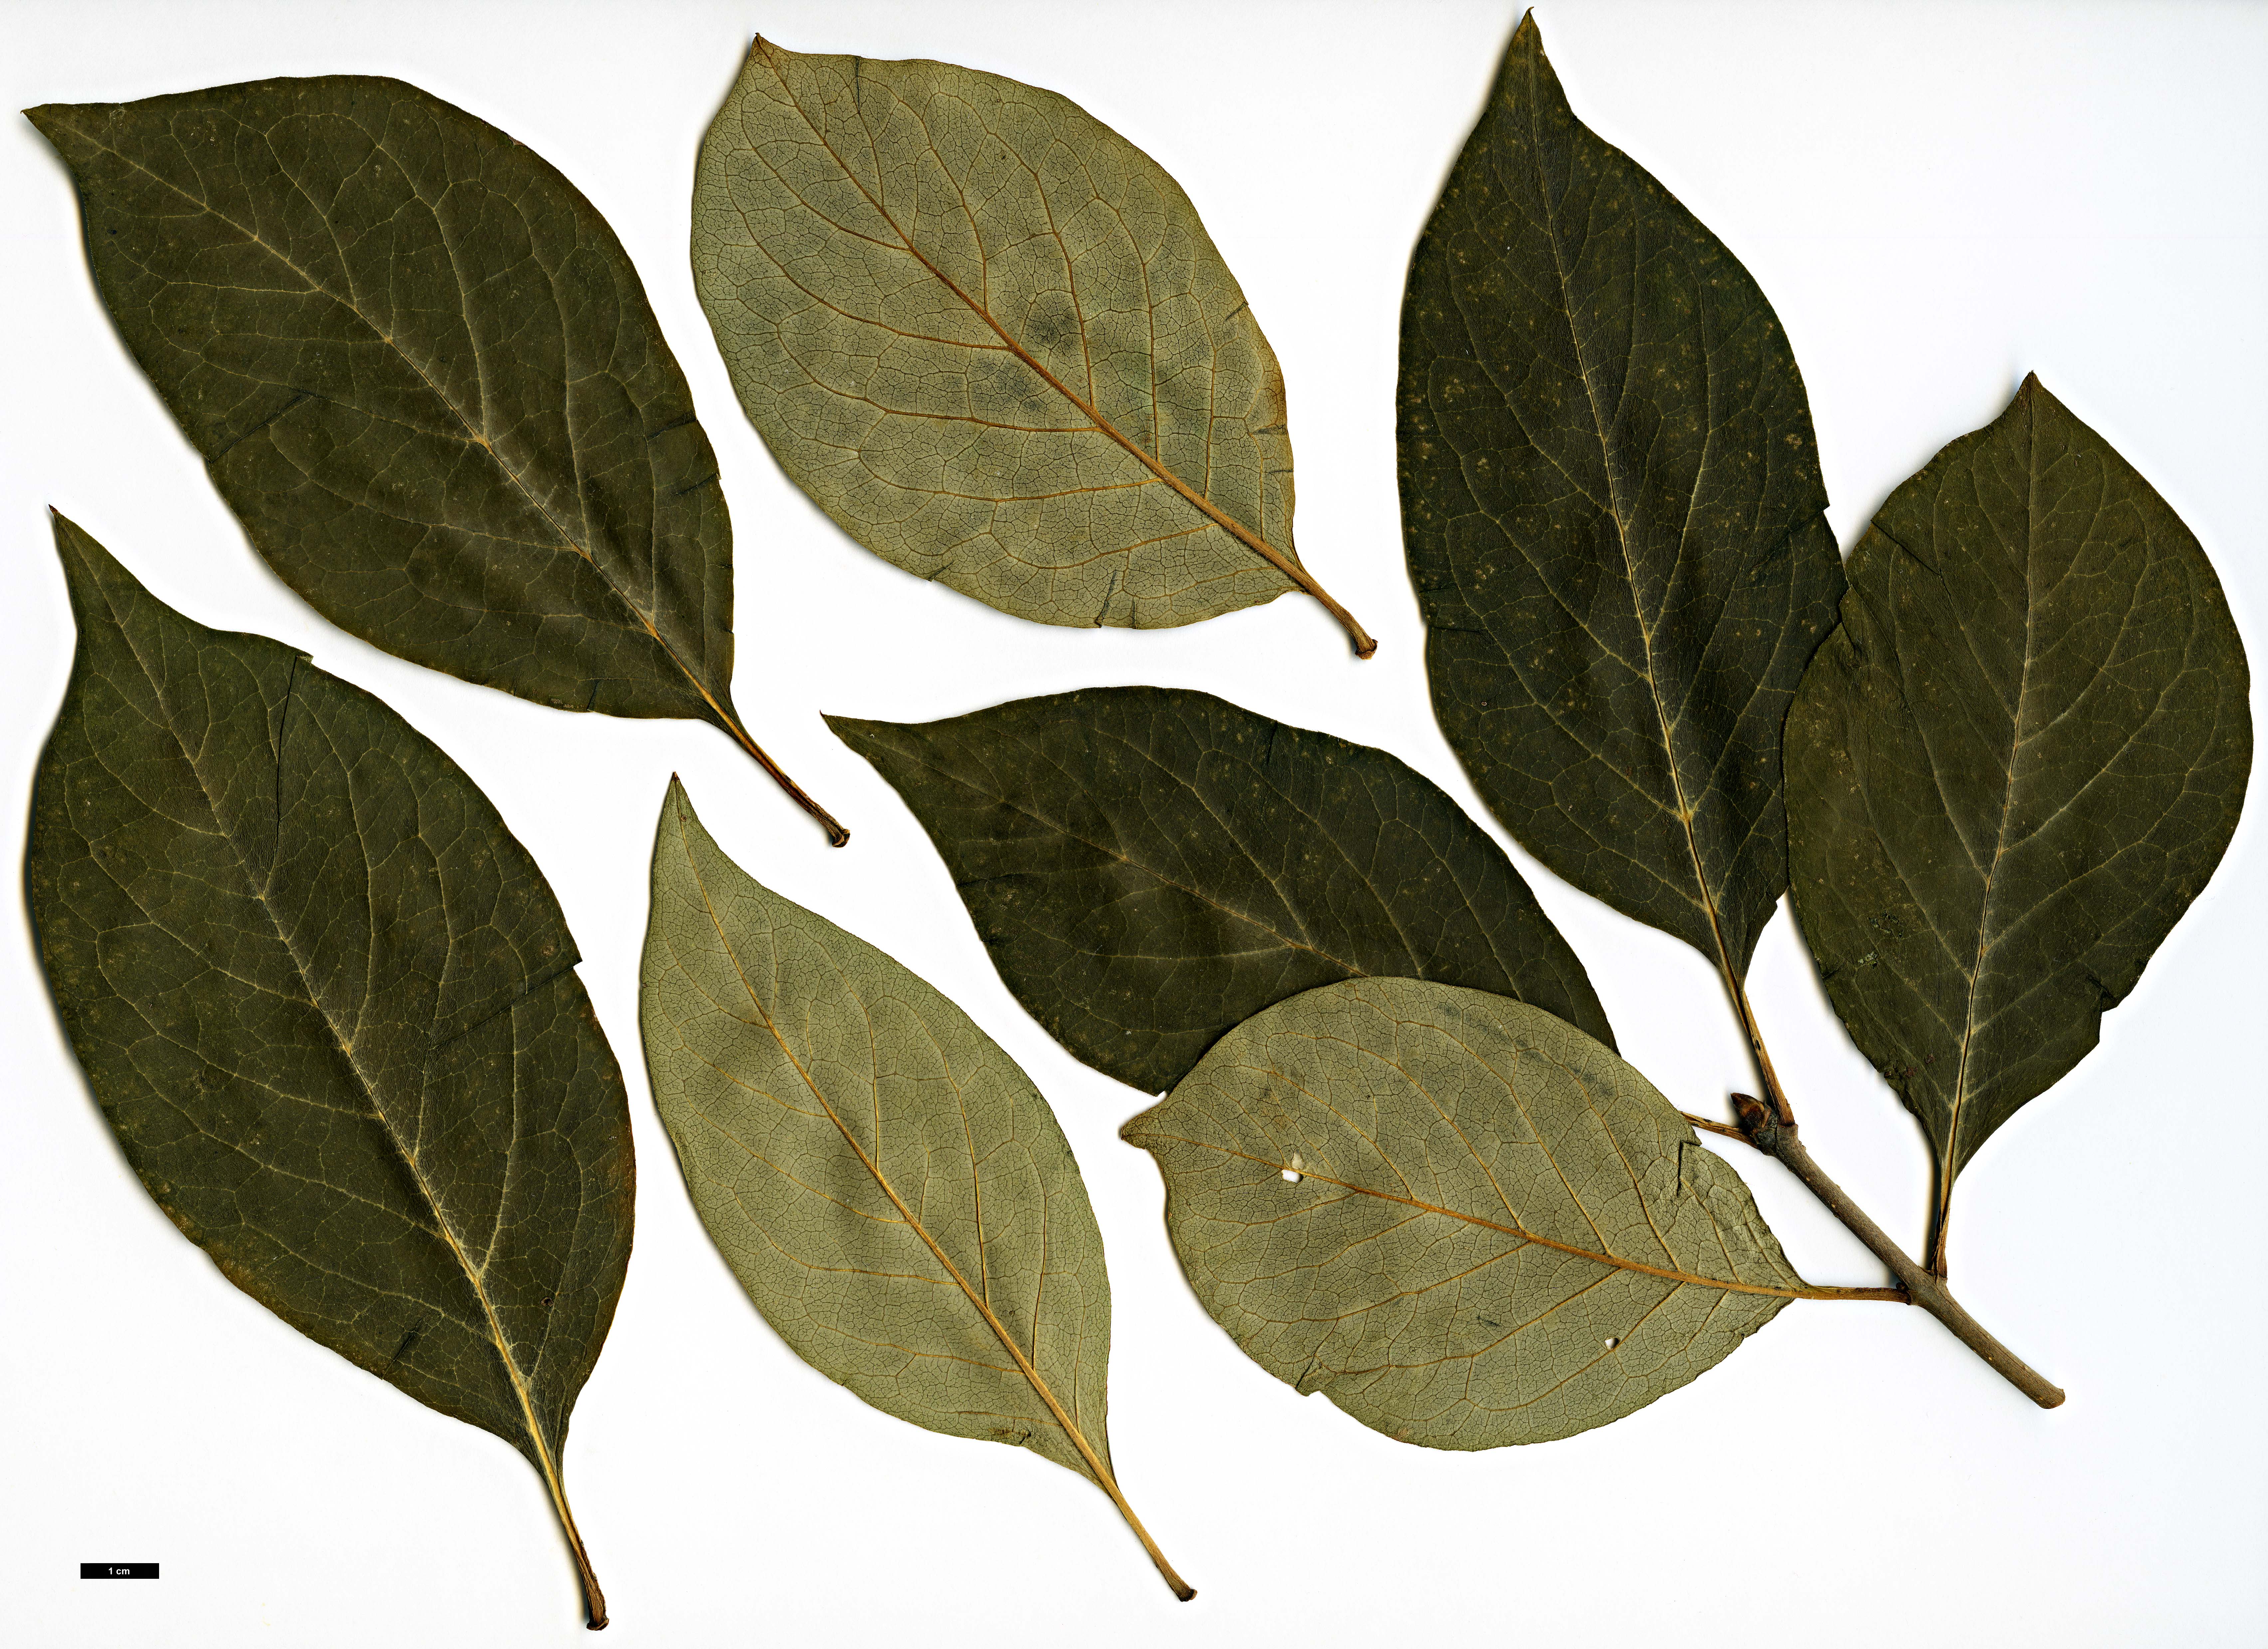 High resolution image: Family: Oleaceae - Genus: Syringa - Taxon: josikaea